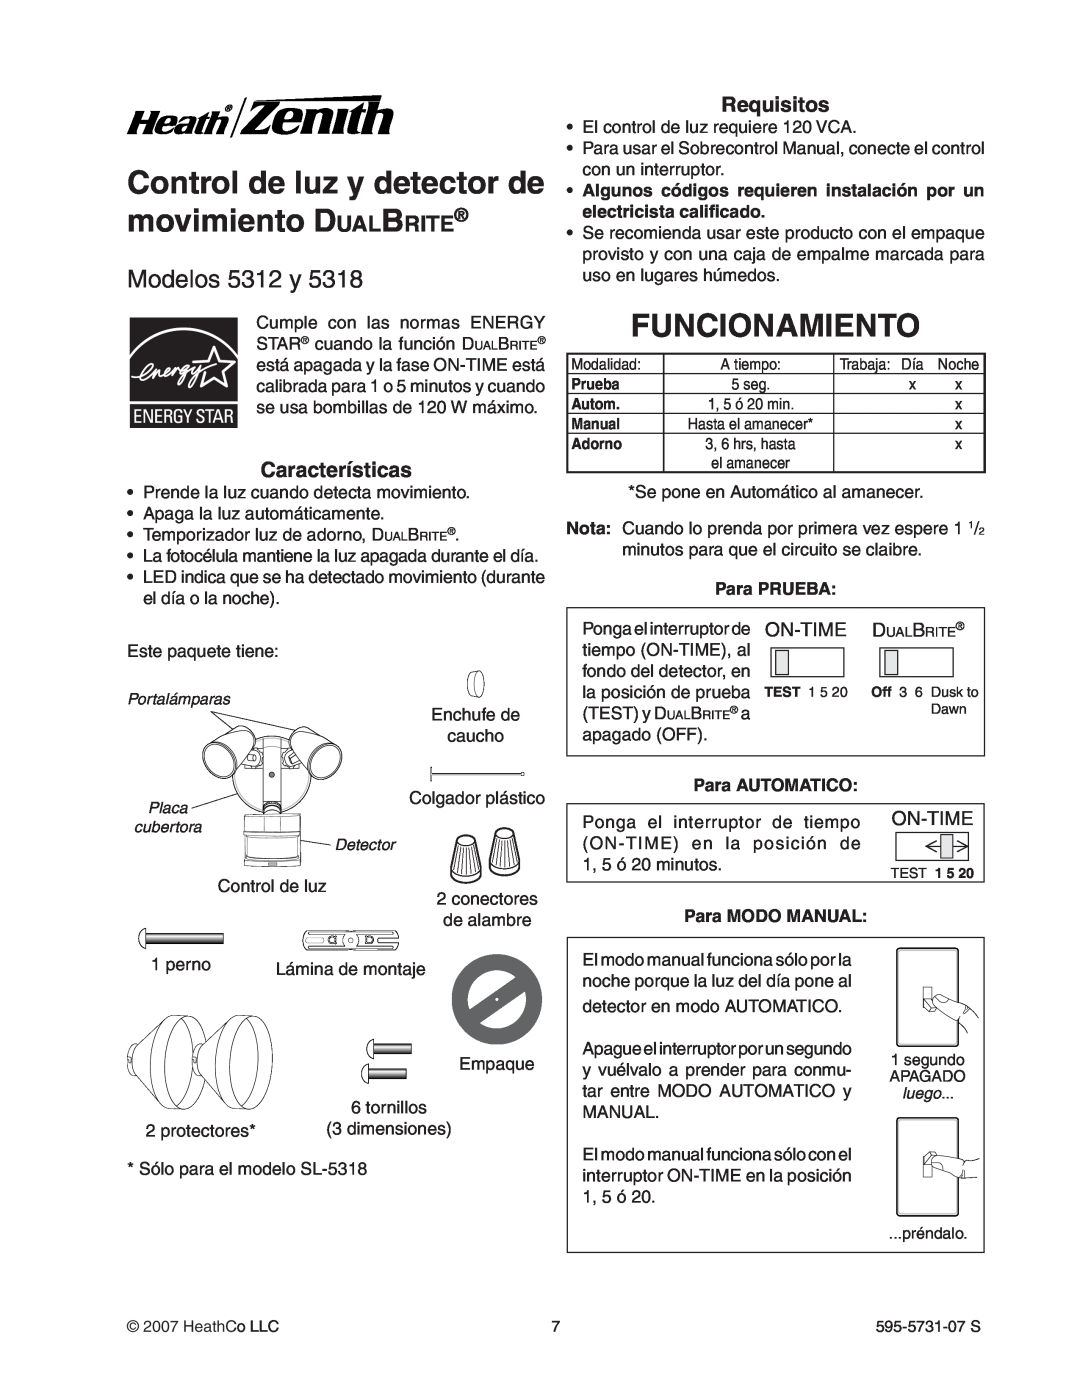 Heath Zenith 5318 manual Control de luz y detector de movimiento DualBrite, Funcionamiento, Modelos 5312 y, Características 